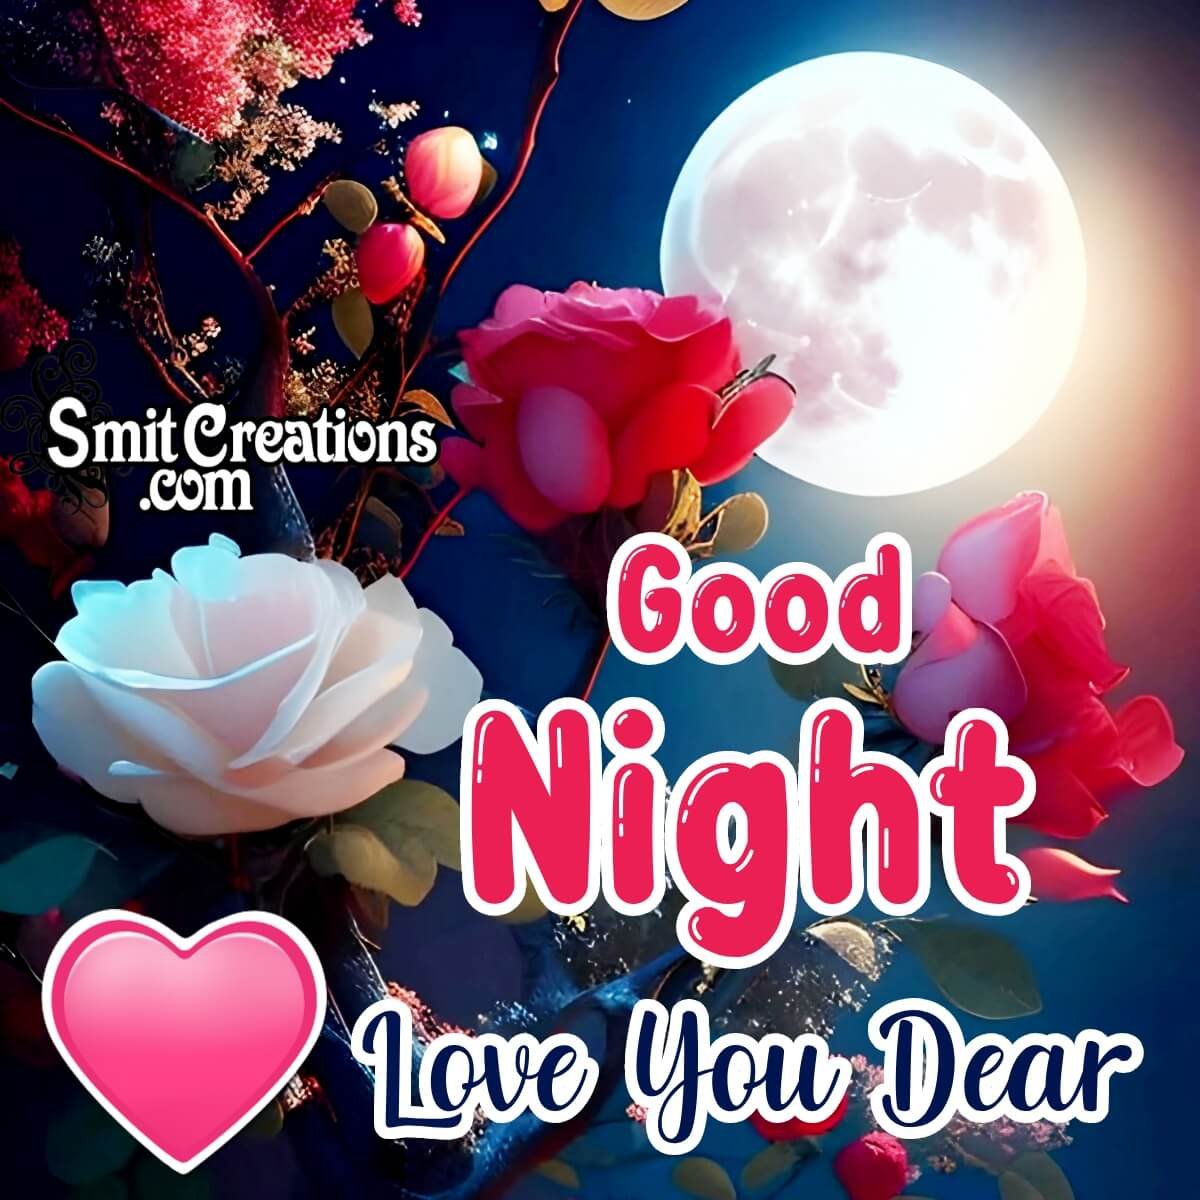 Good Night Love You Dear